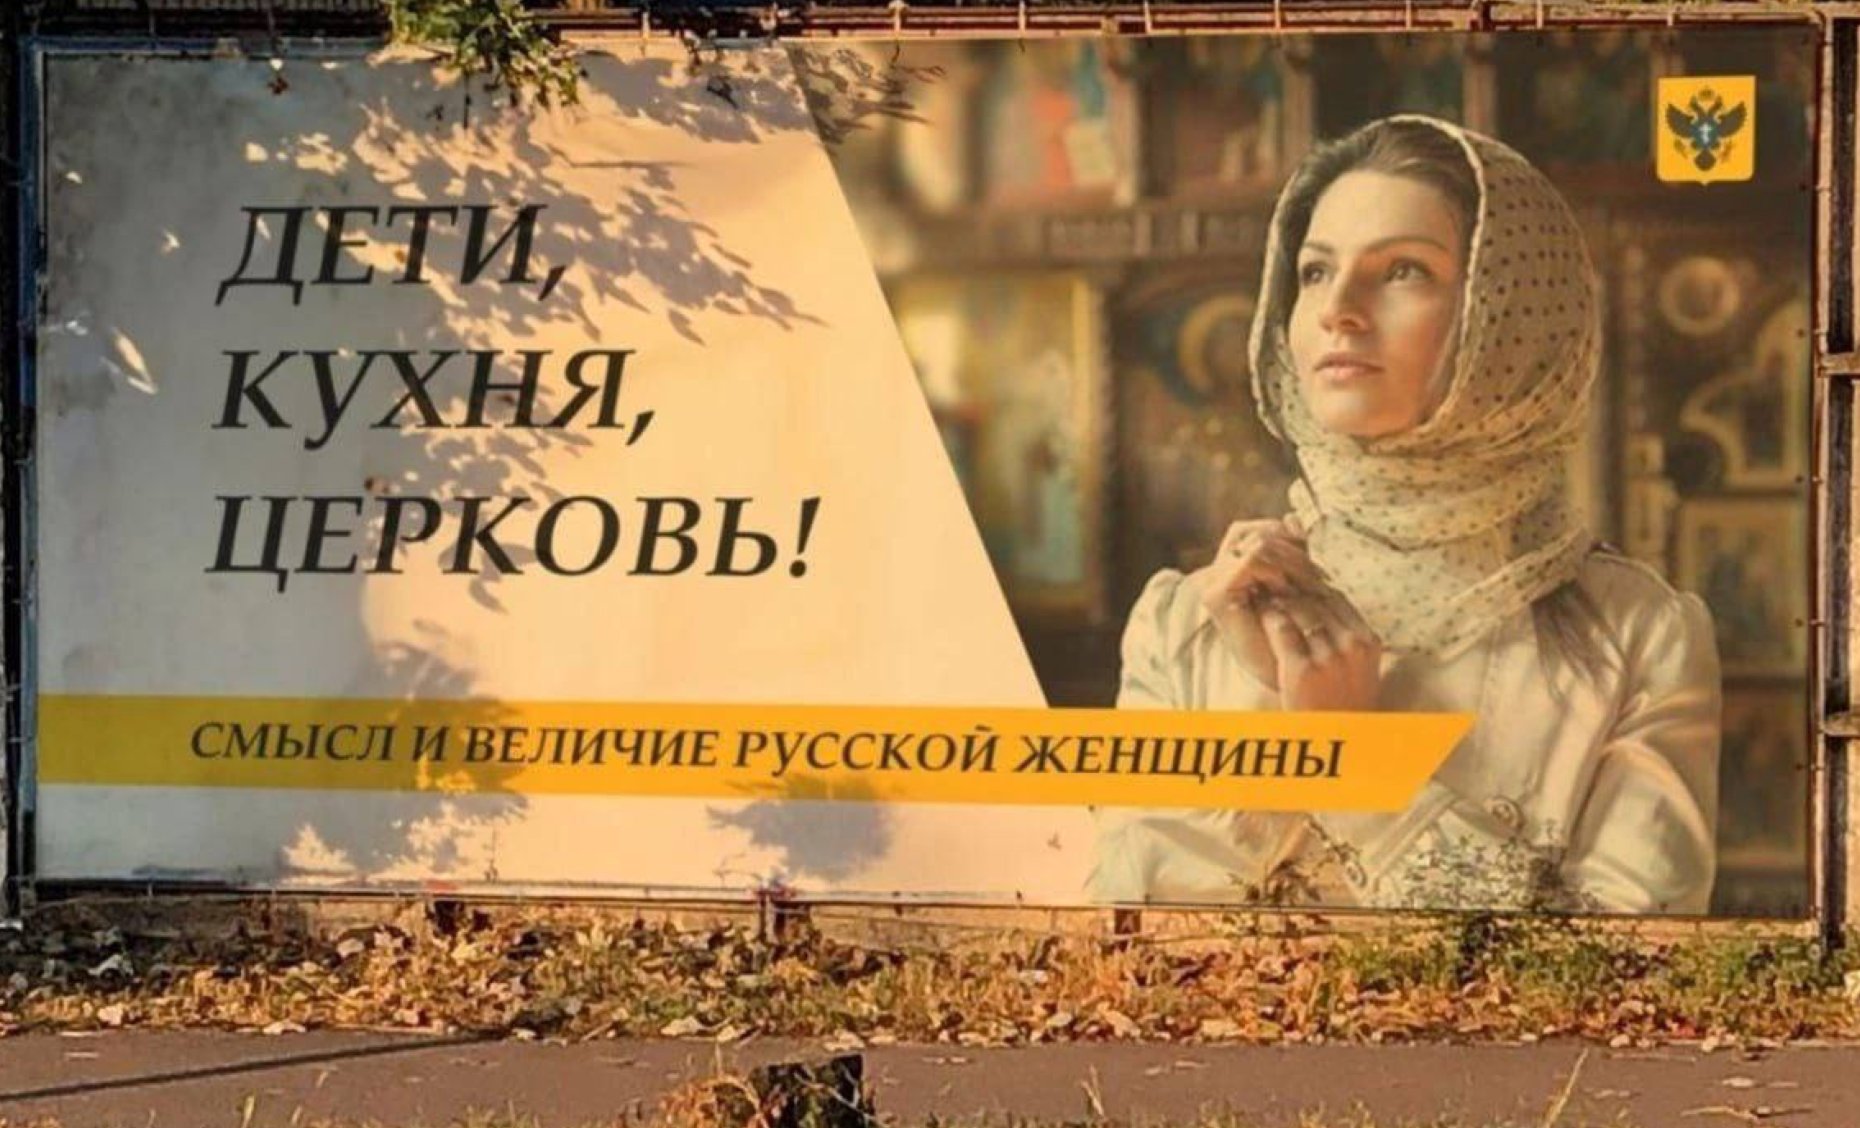 Ограничить высшее образование для женщин предложили в Совете Федерации